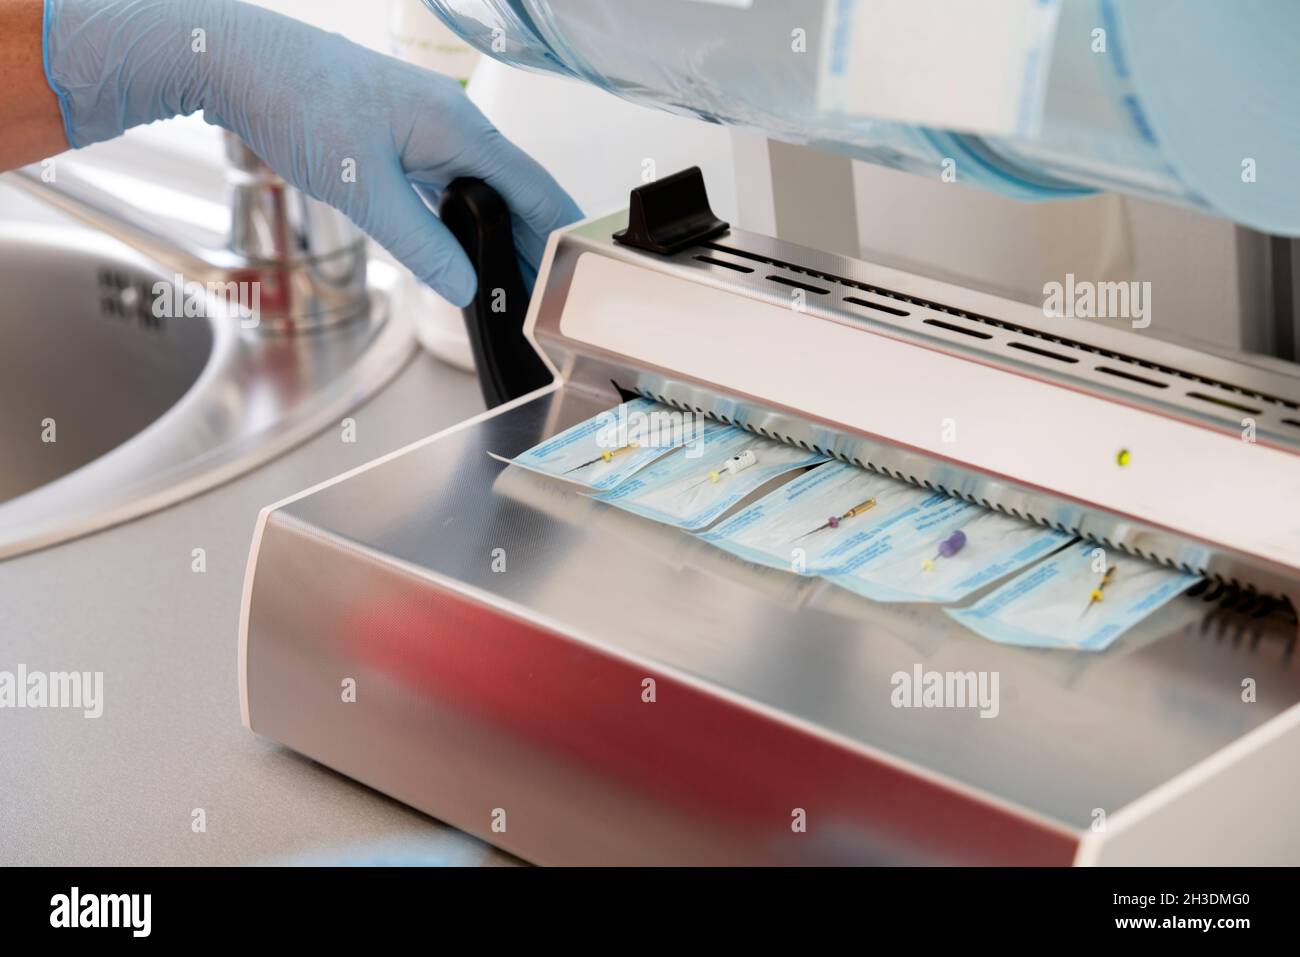 Verpackung und Vorbereitung für die Sterilisation von Dentalwerkzeugen  Stockfotografie - Alamy